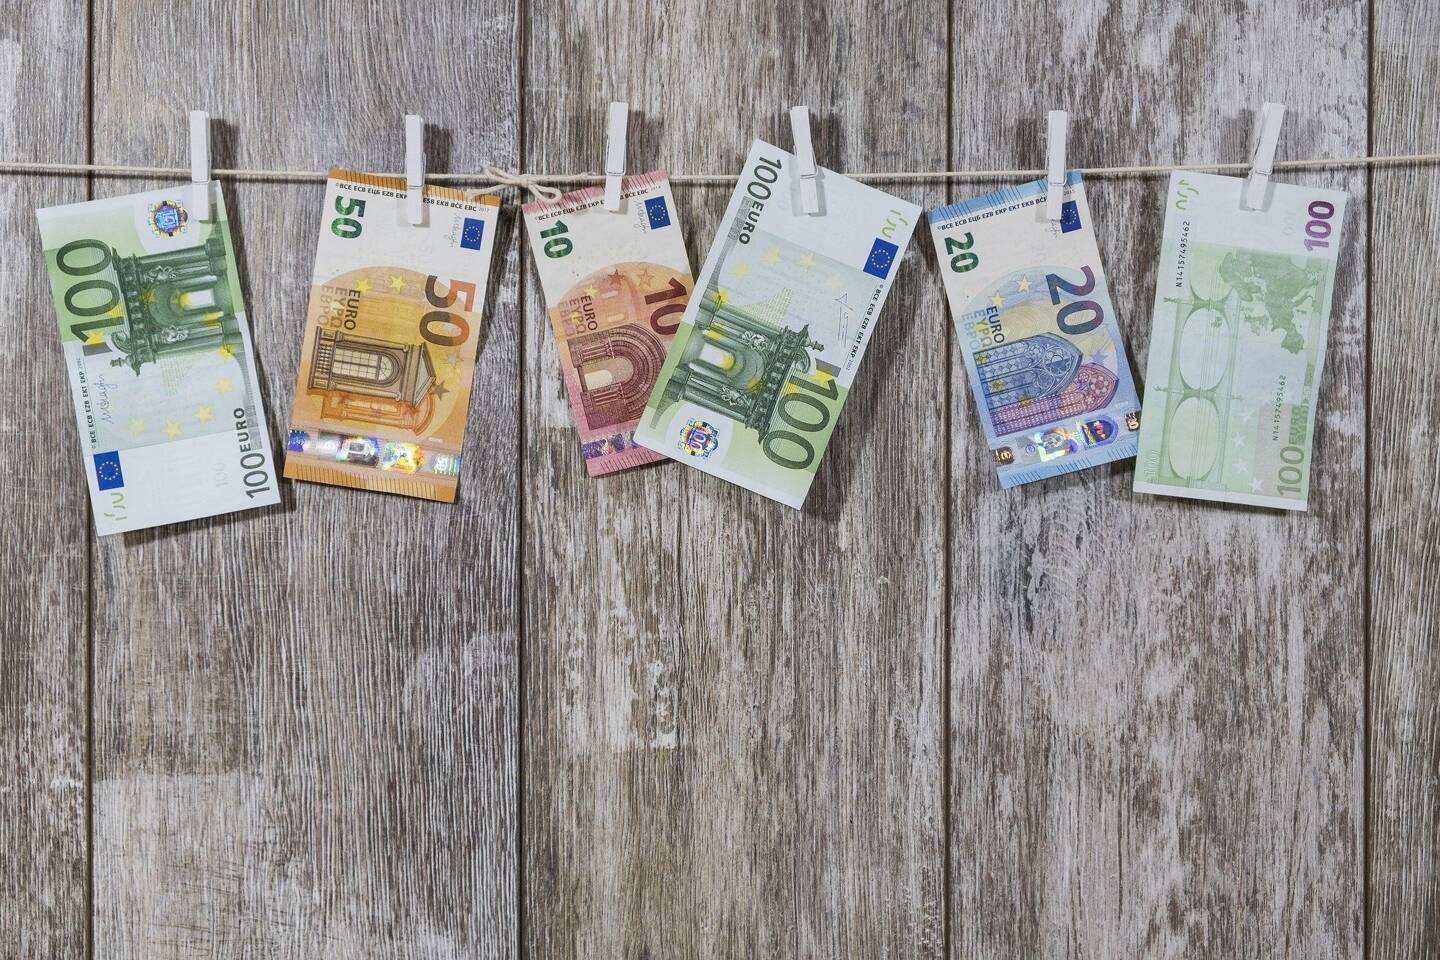 Des euros séchant au soleil (photo d'illustration).